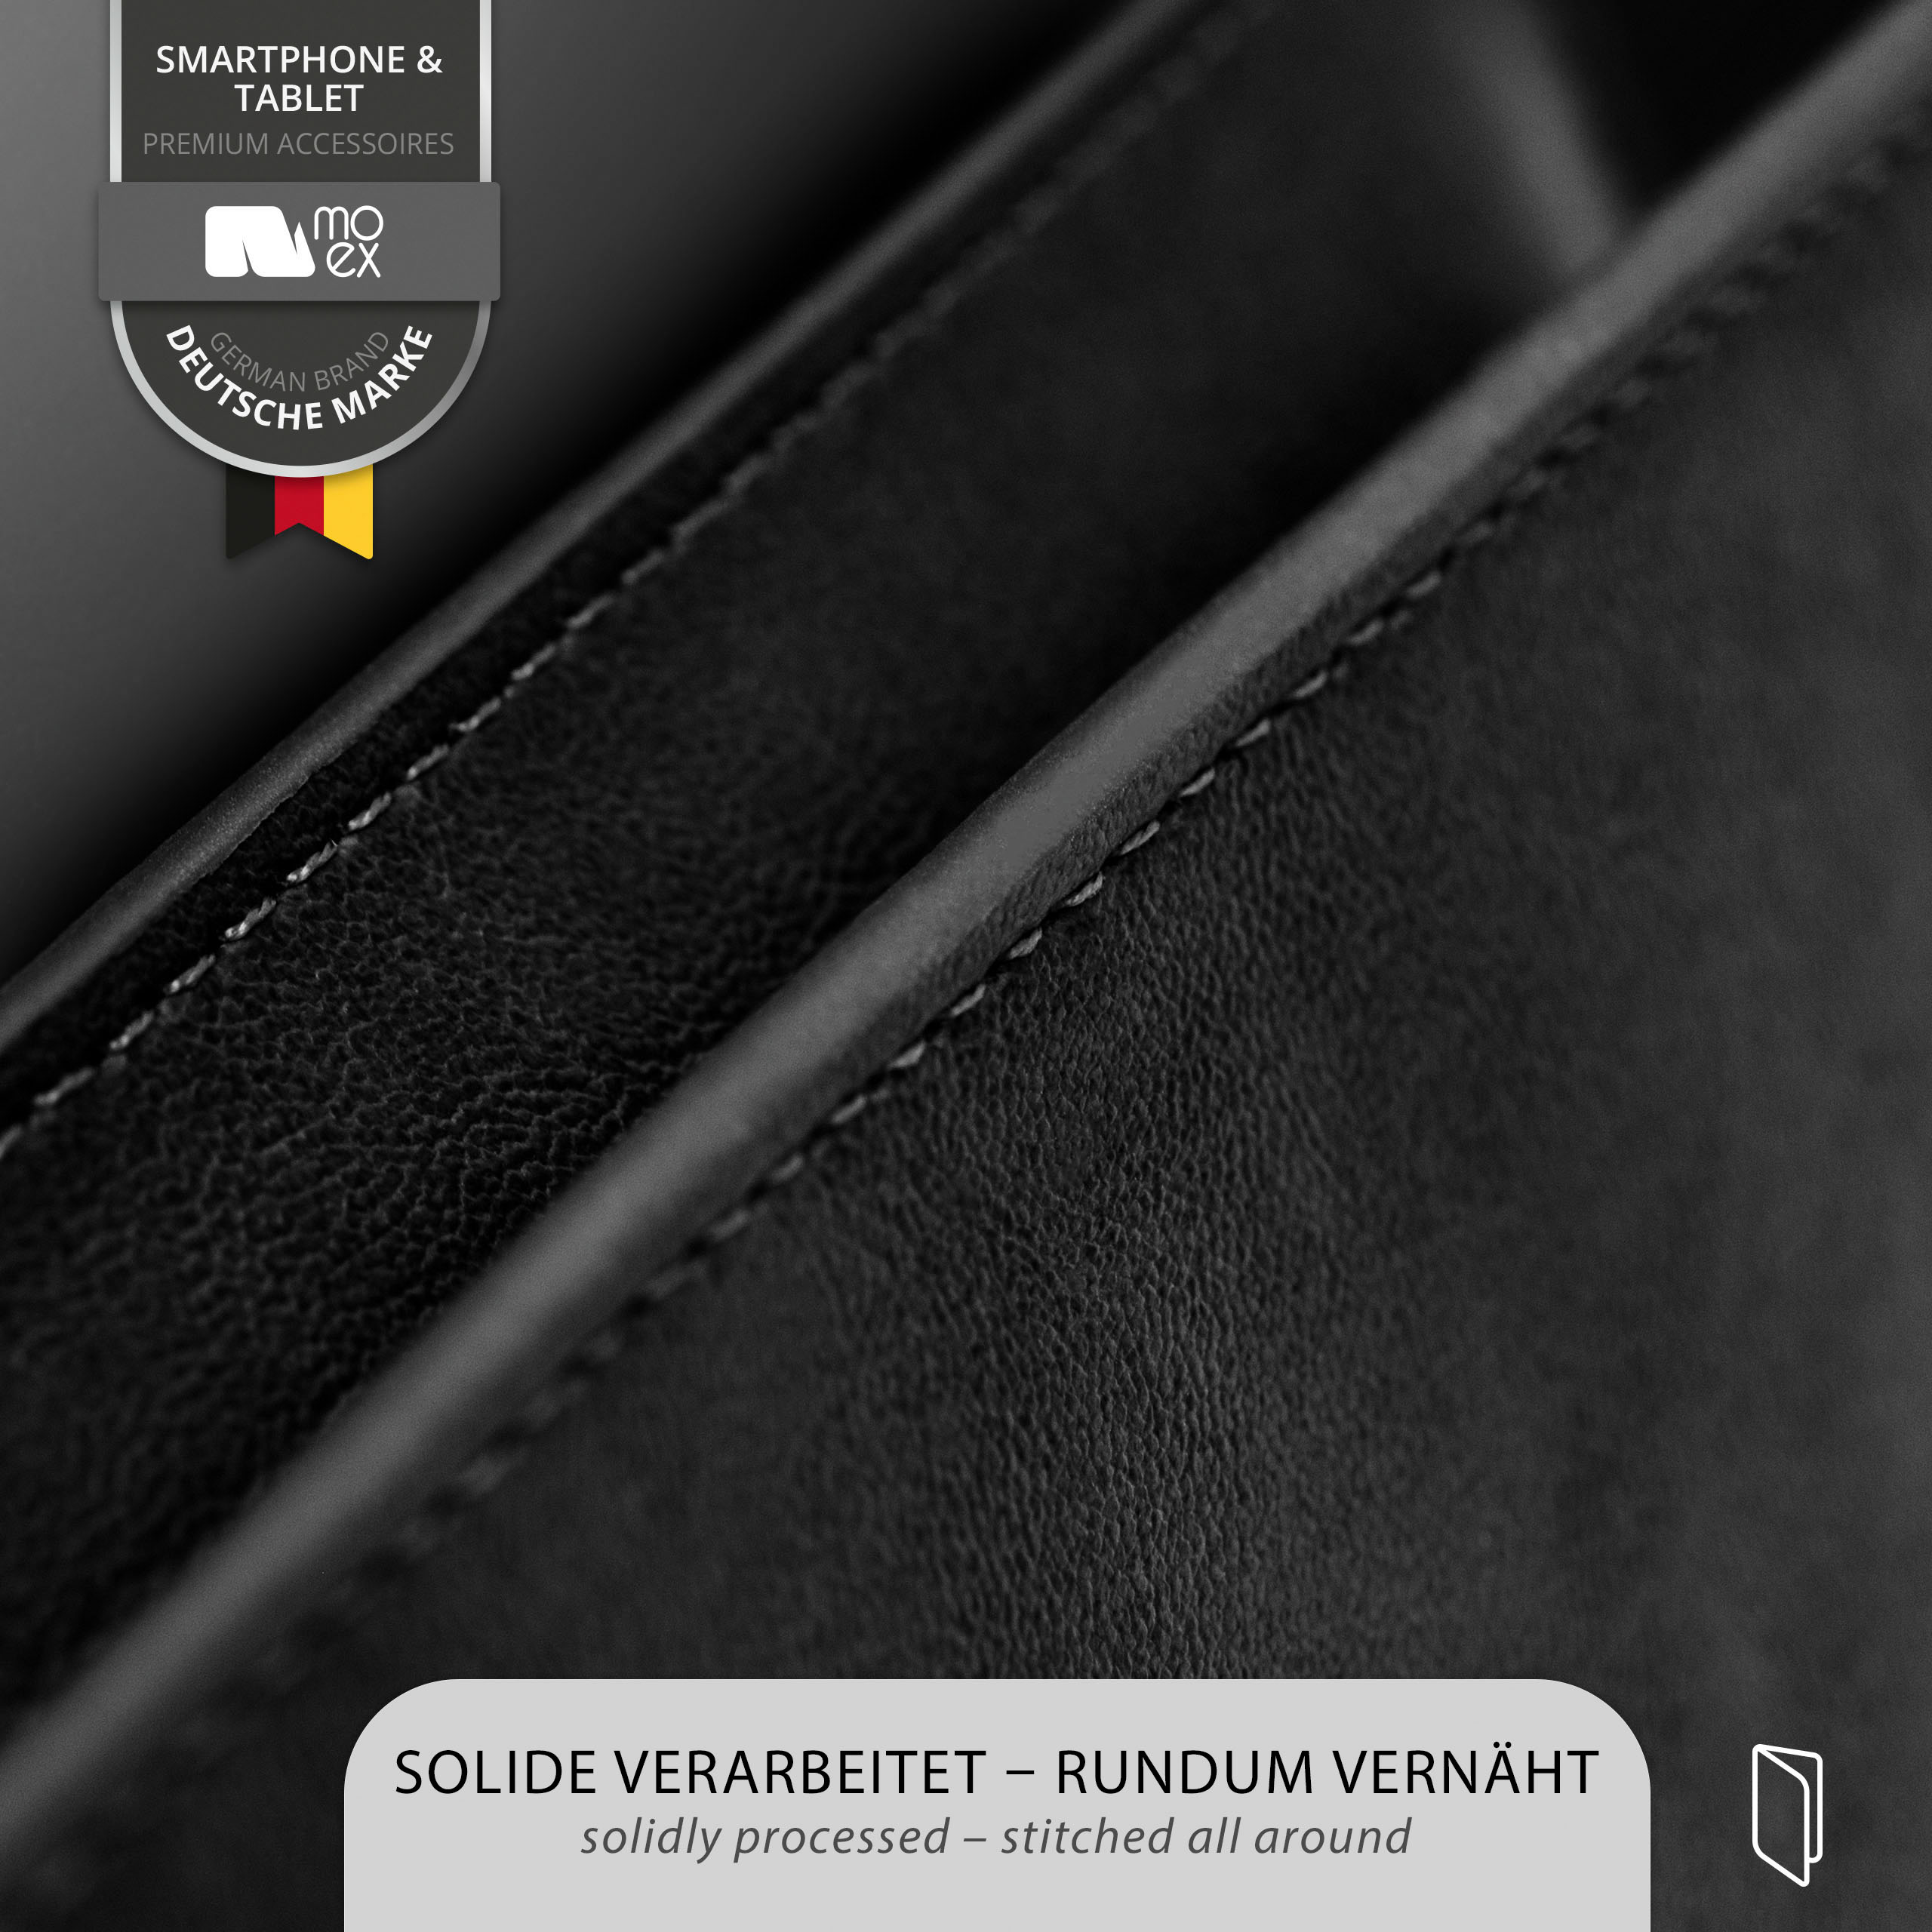 Schwarz Case, MOEX Flip OnePlus, Purse Cover, 6,